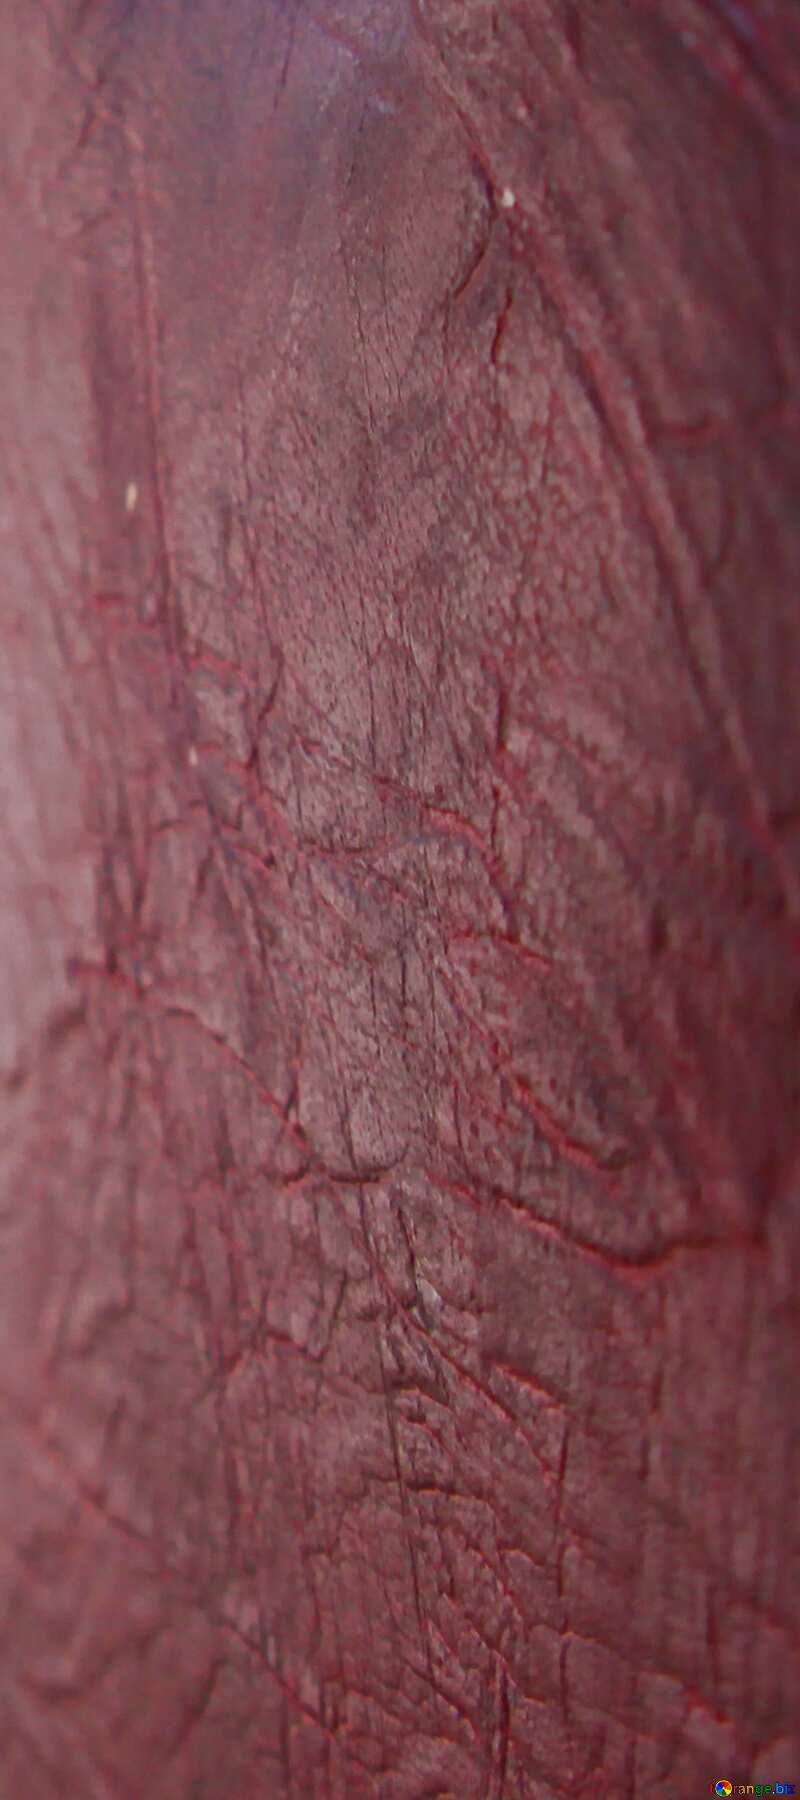 Texture  door skin №1694